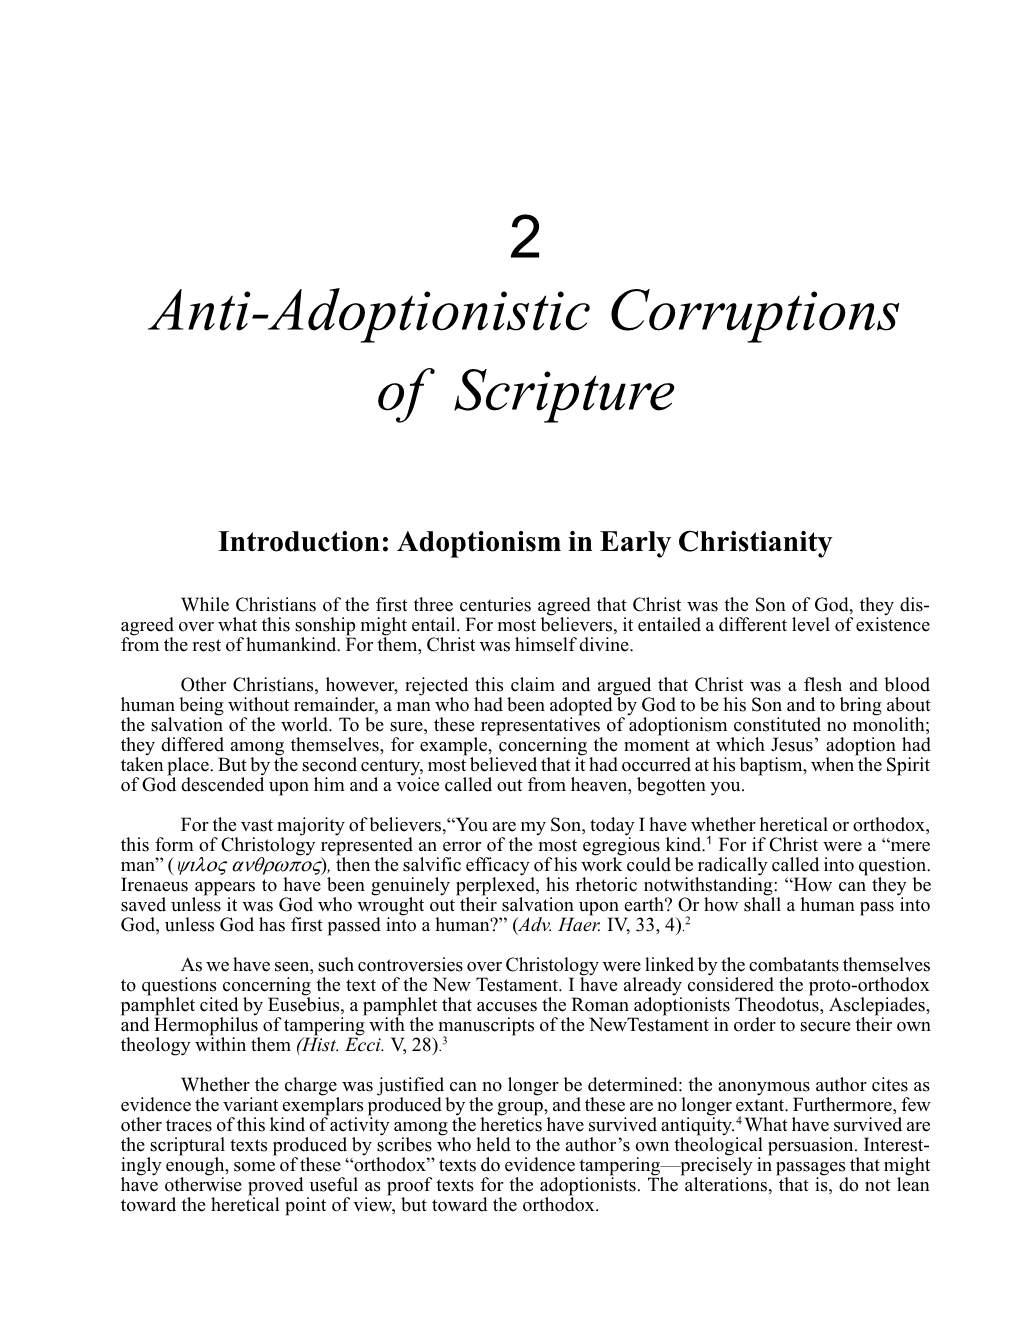 2 Anti-Adoptionistic Corruptions of Scripture